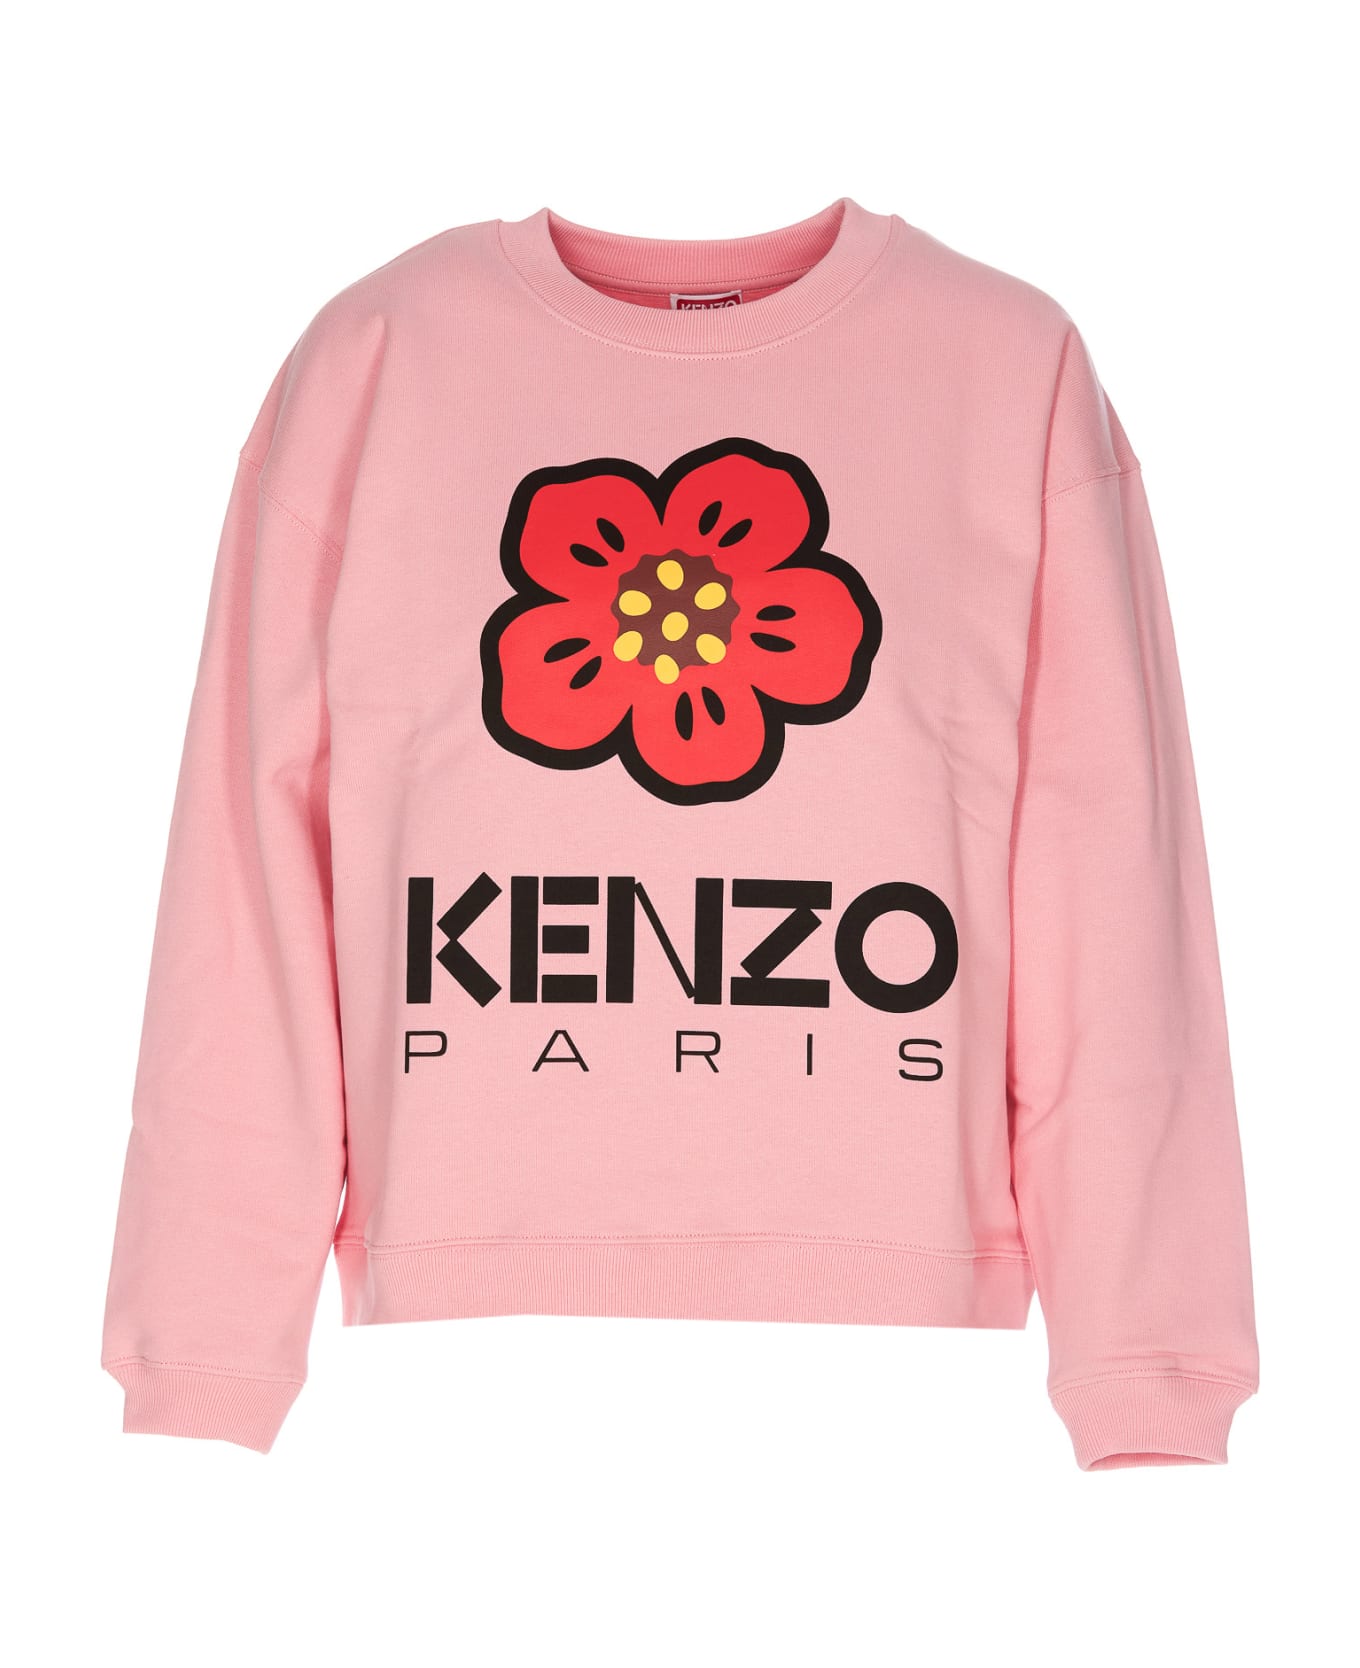 Kenzo Paris Logo Sweatshirt - Pink